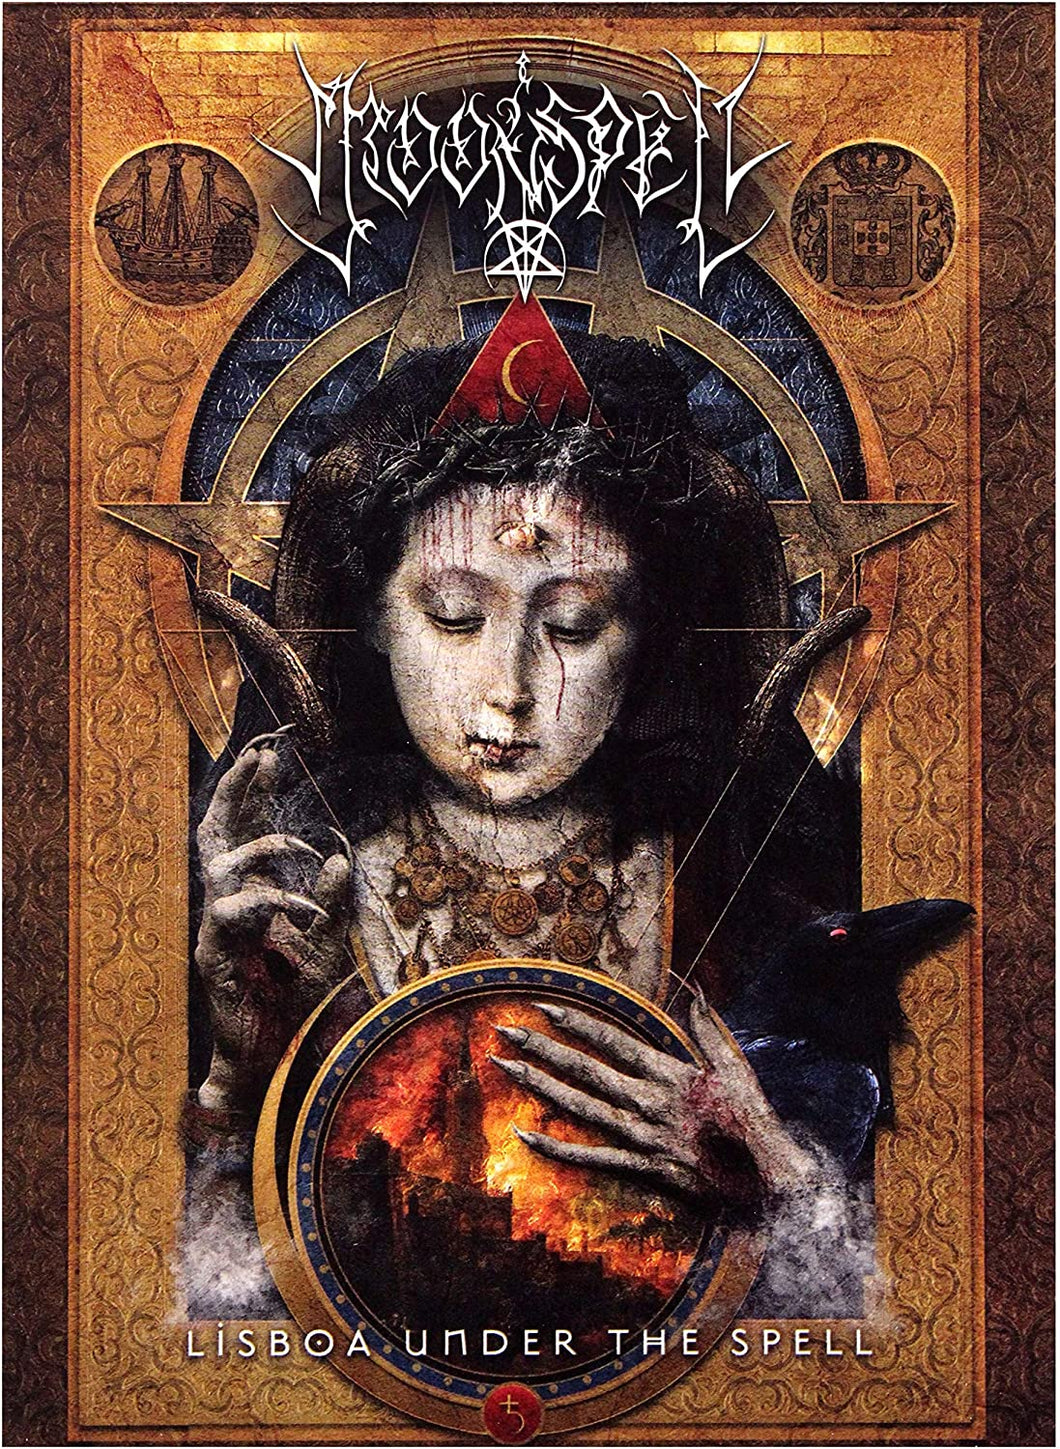 Moonspell - Lisboa Under The Spell DVD/Blu-Ray & Bonus CD